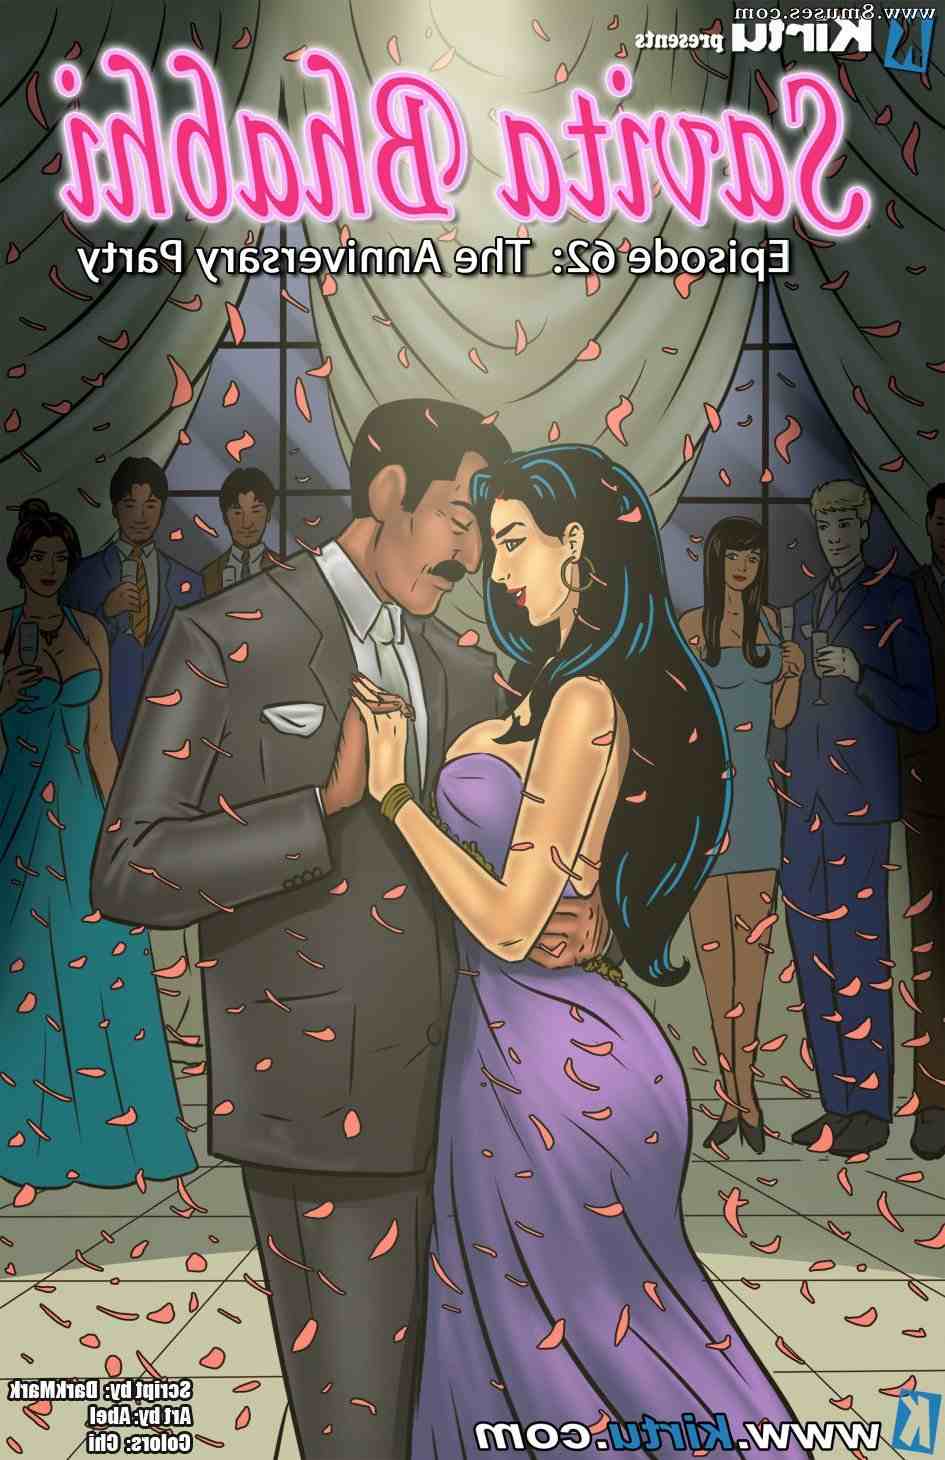 Kirtu_com-Comics/Savita-Bhabhi/Savita-Bhabhi-Episode-62-The-Anniversary-Party Savita_Bhabhi_-_Episode_62_-_The_Anniversary_Party__8muses_-_Sex_and_Porn_Comics.jpg